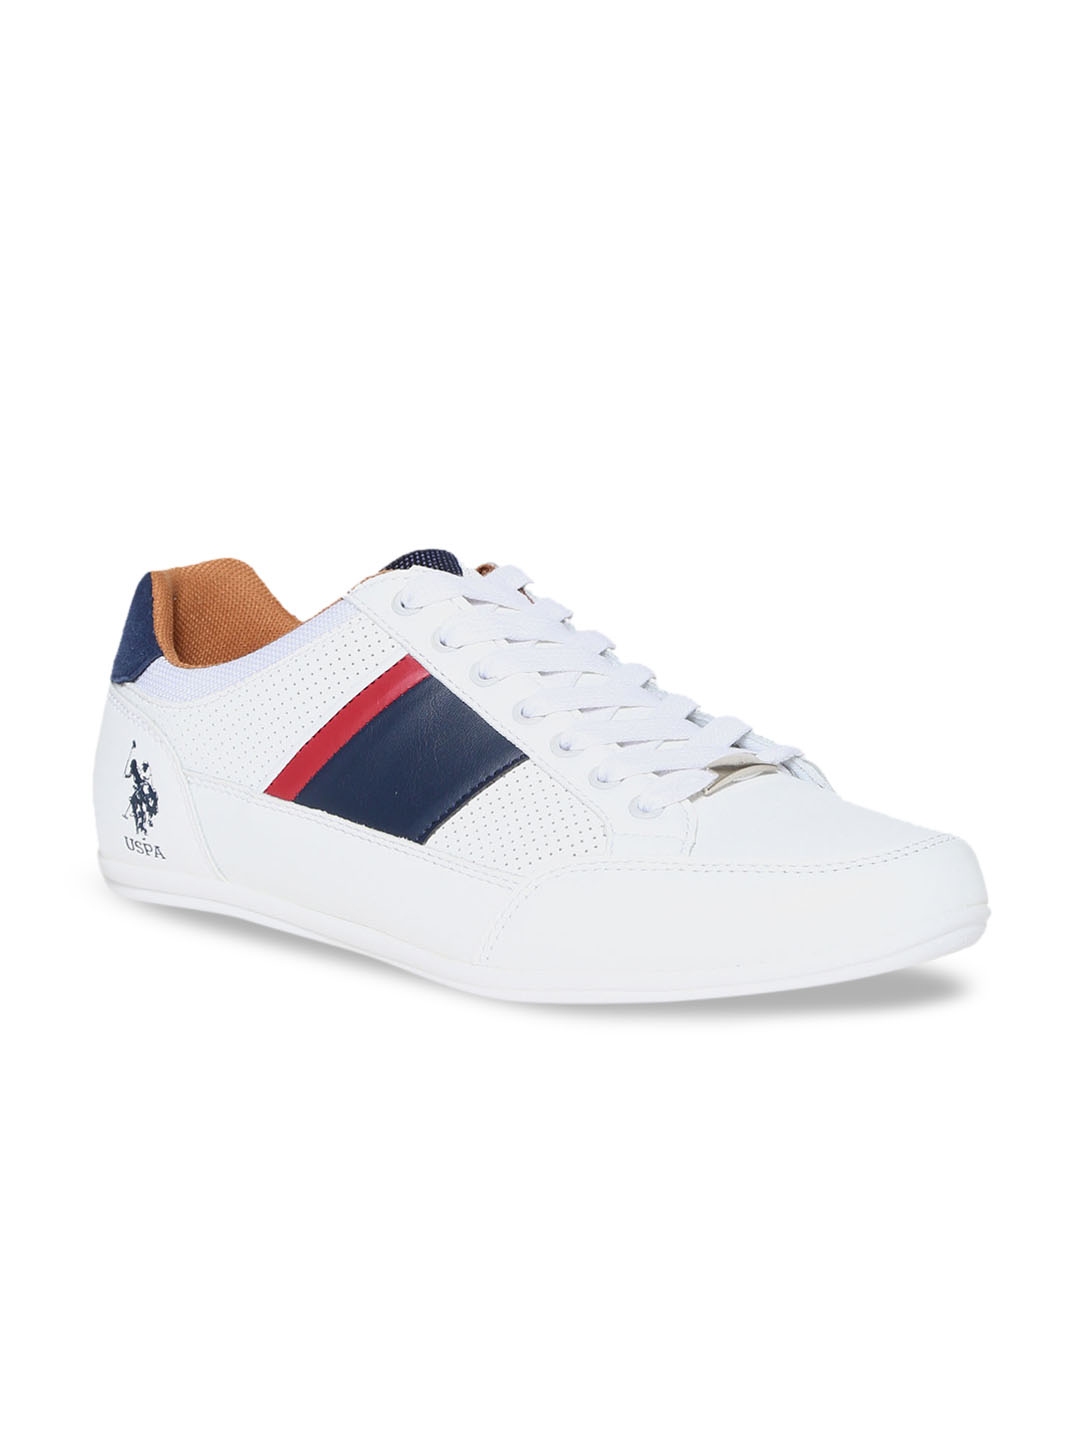 Buy U.S. Polo Assn. Men White & Blue Colourblocked Sneakers - Casual ...